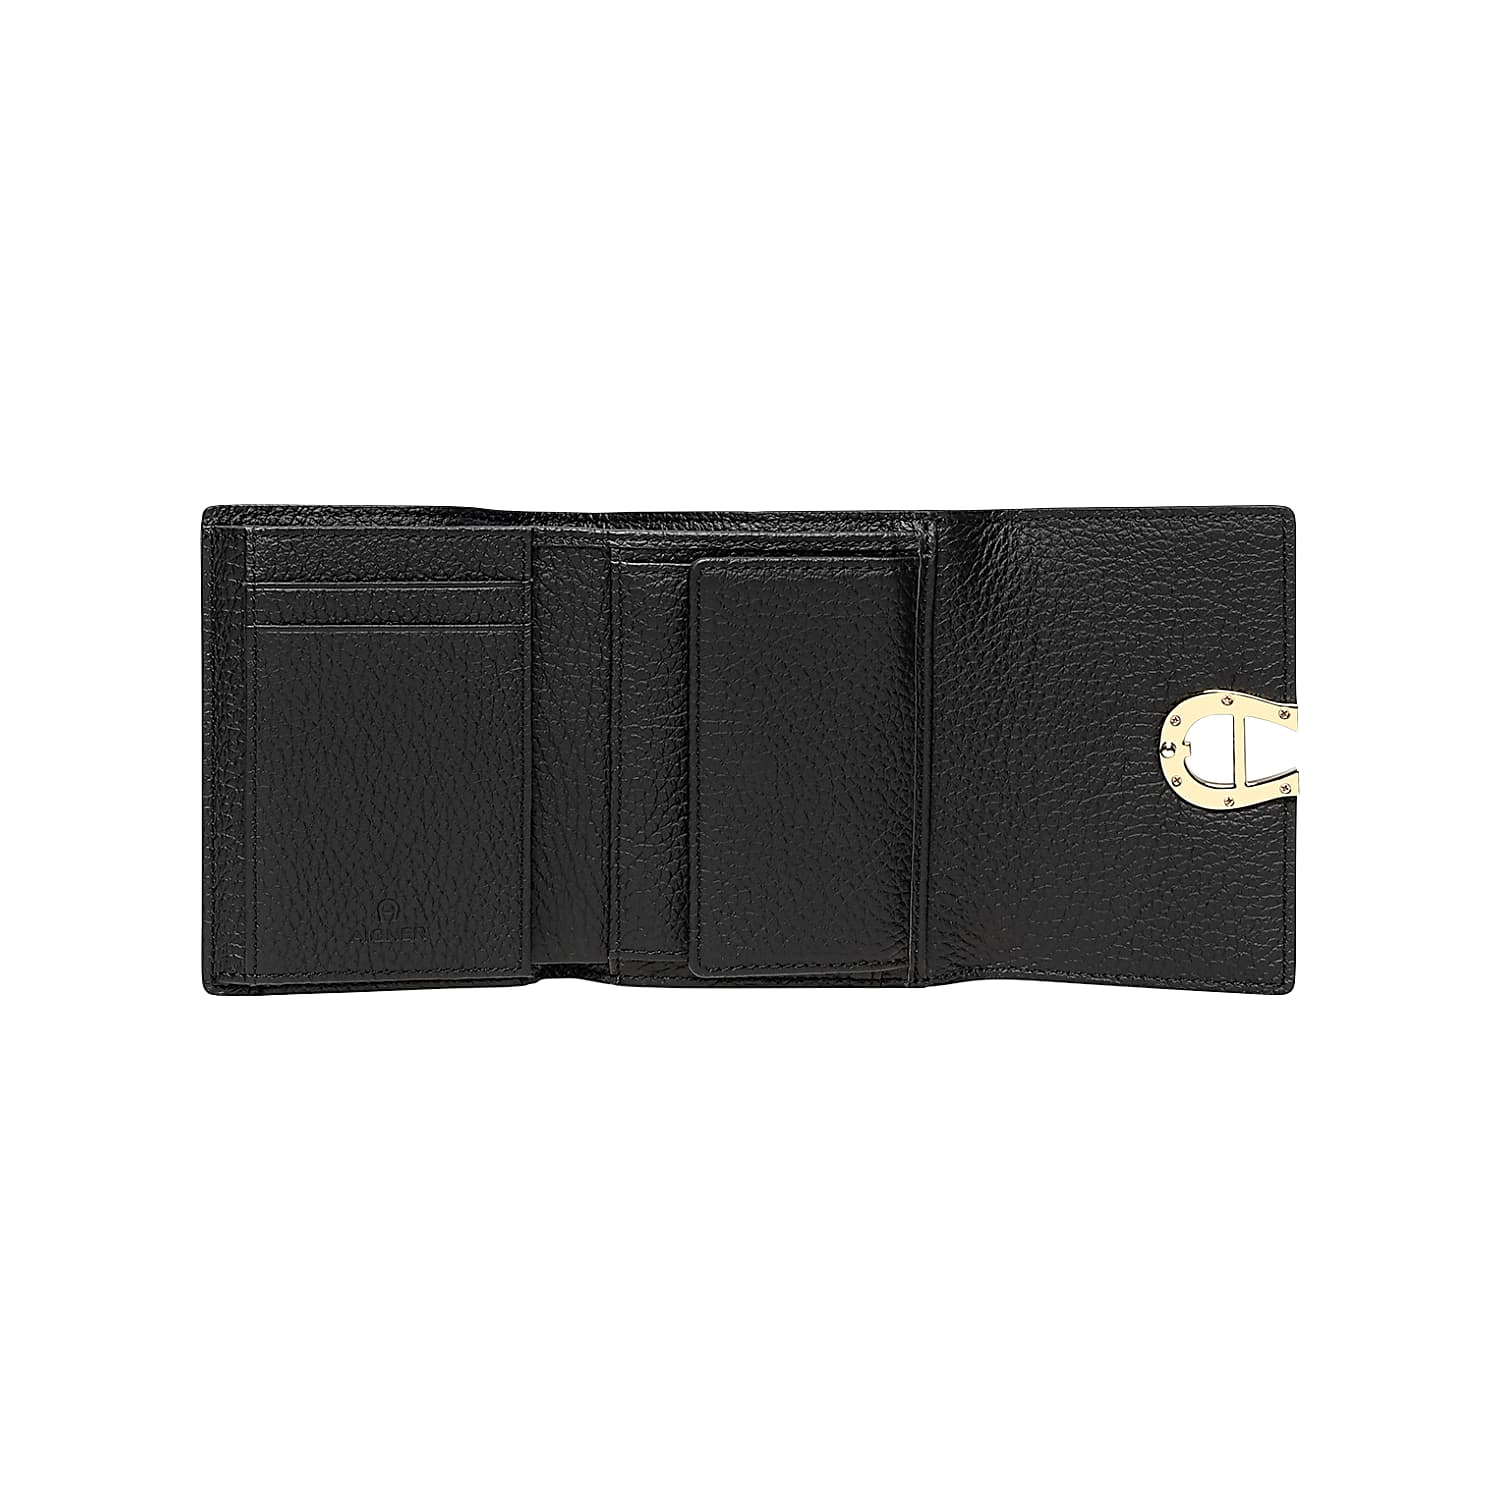 Dadino combination wallet